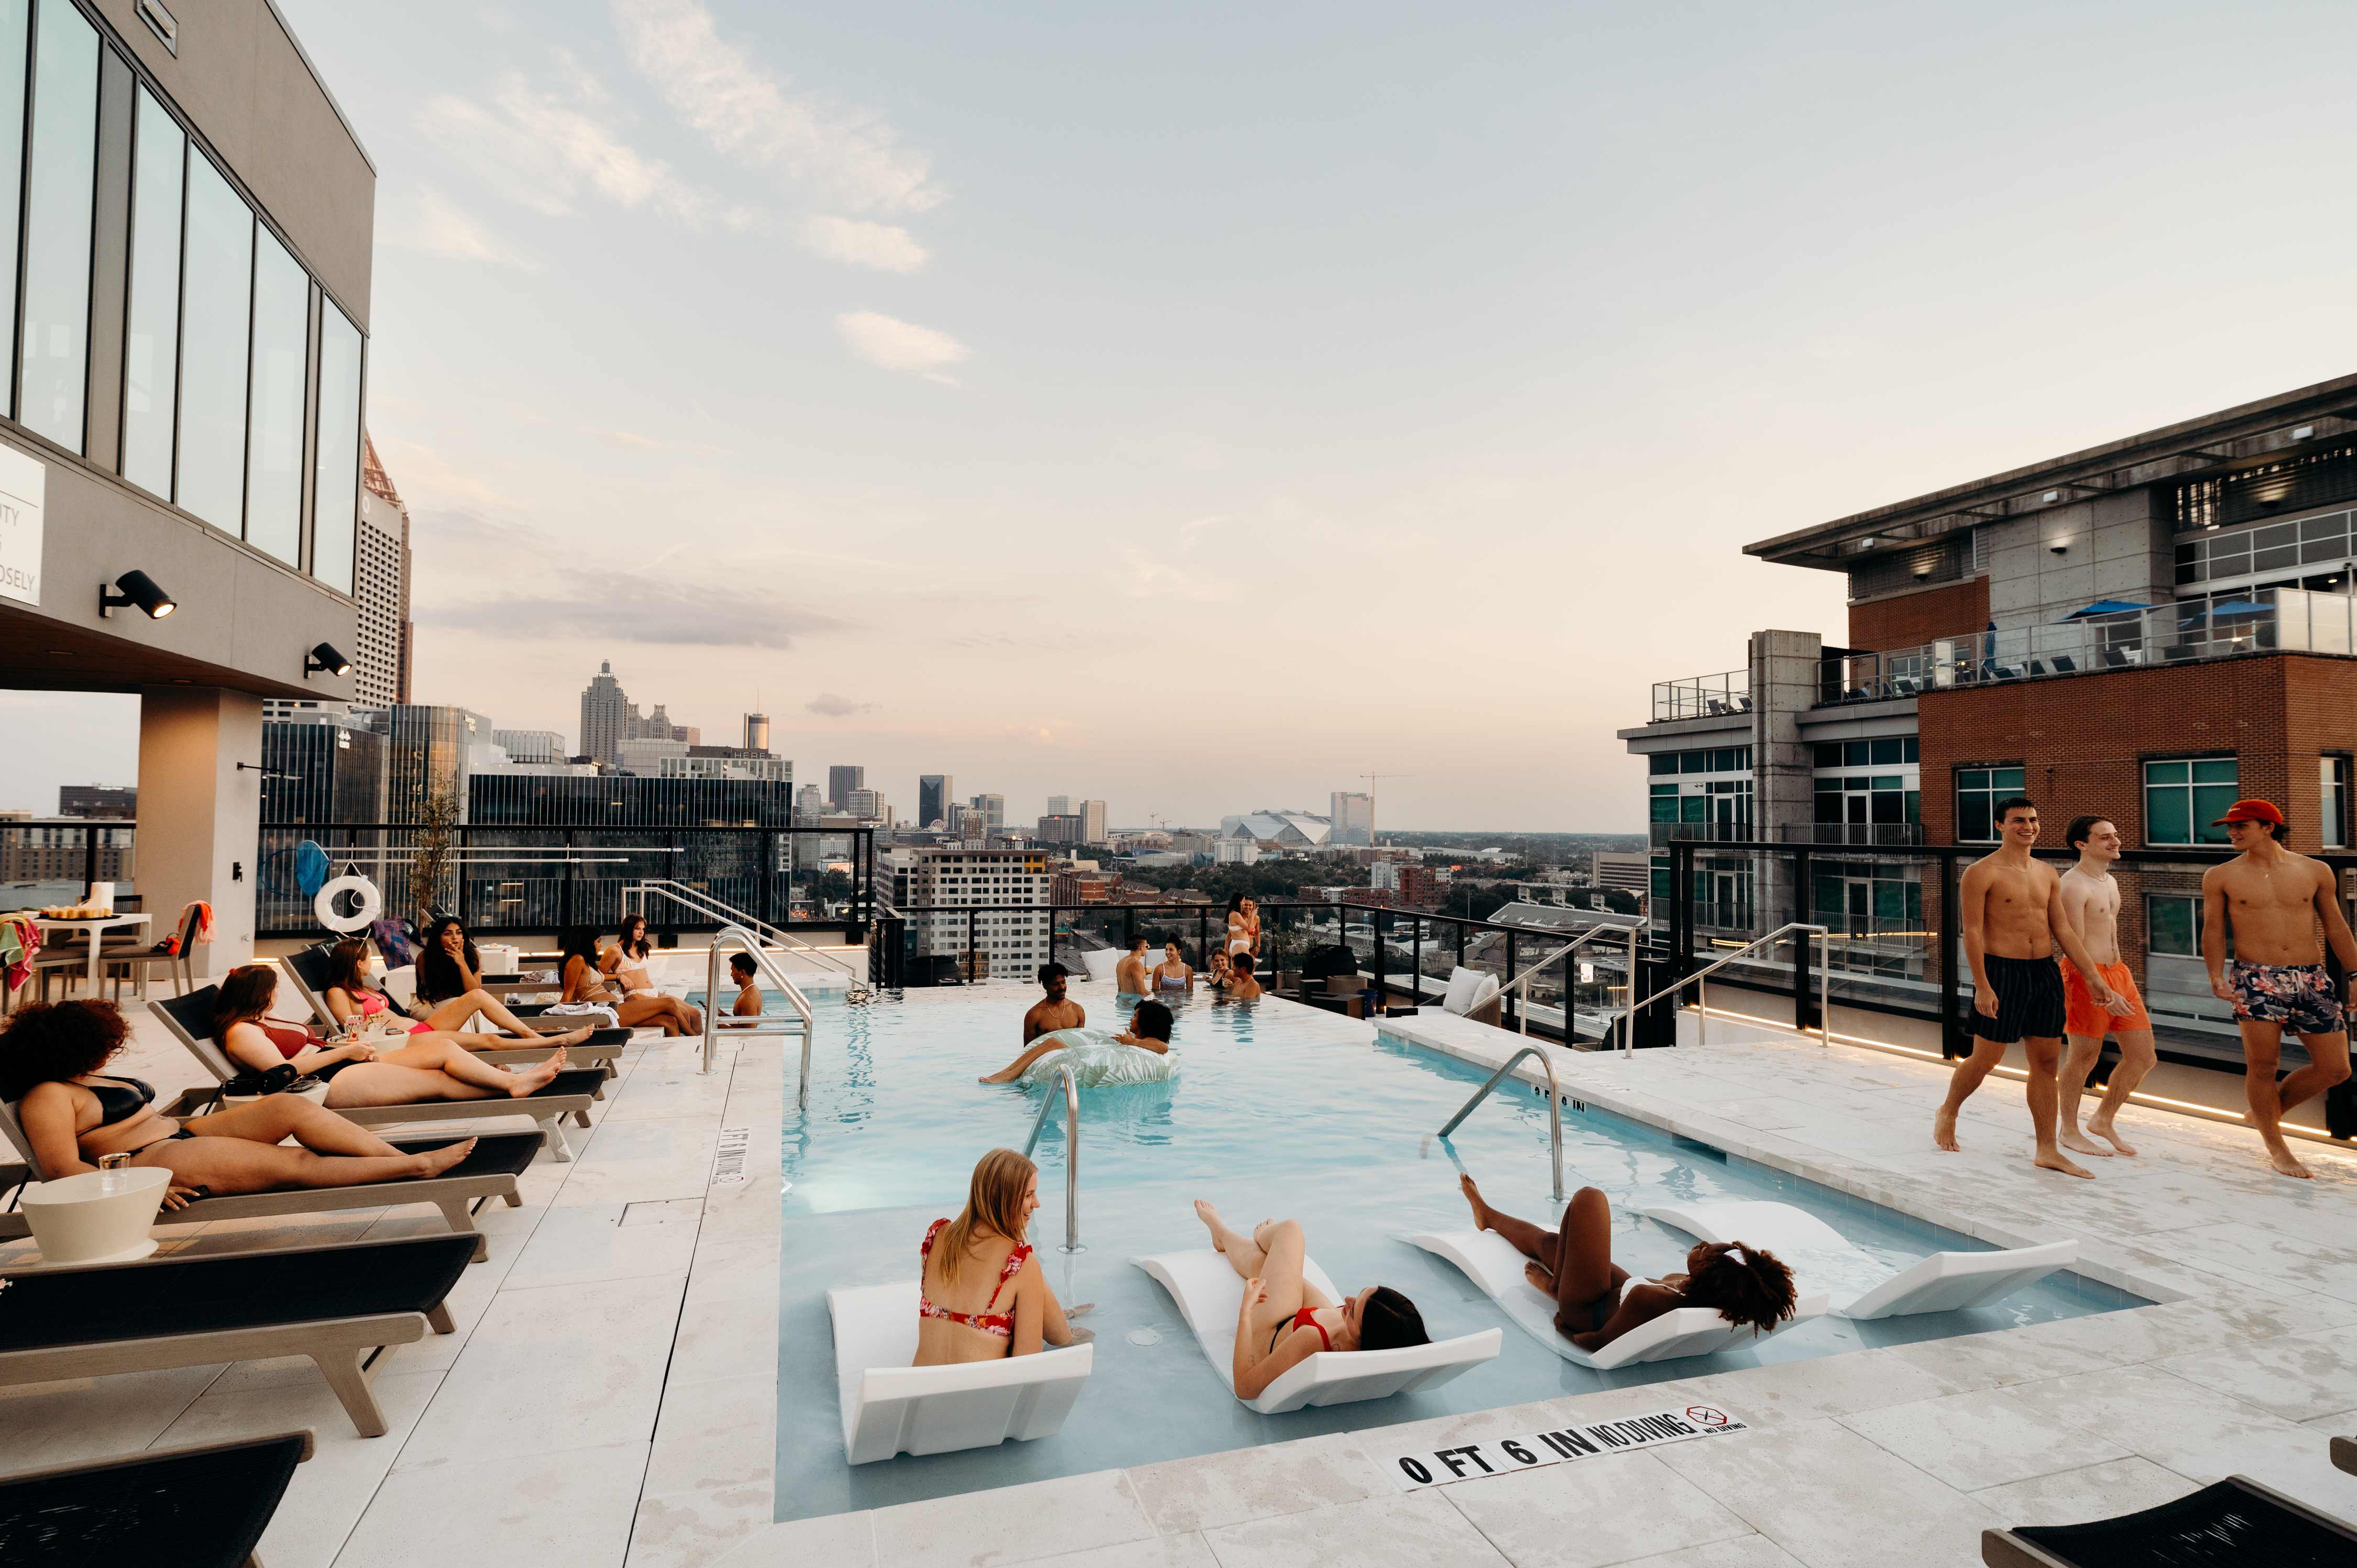 Whistler's rooftop pool deck in Midtown Atlanta